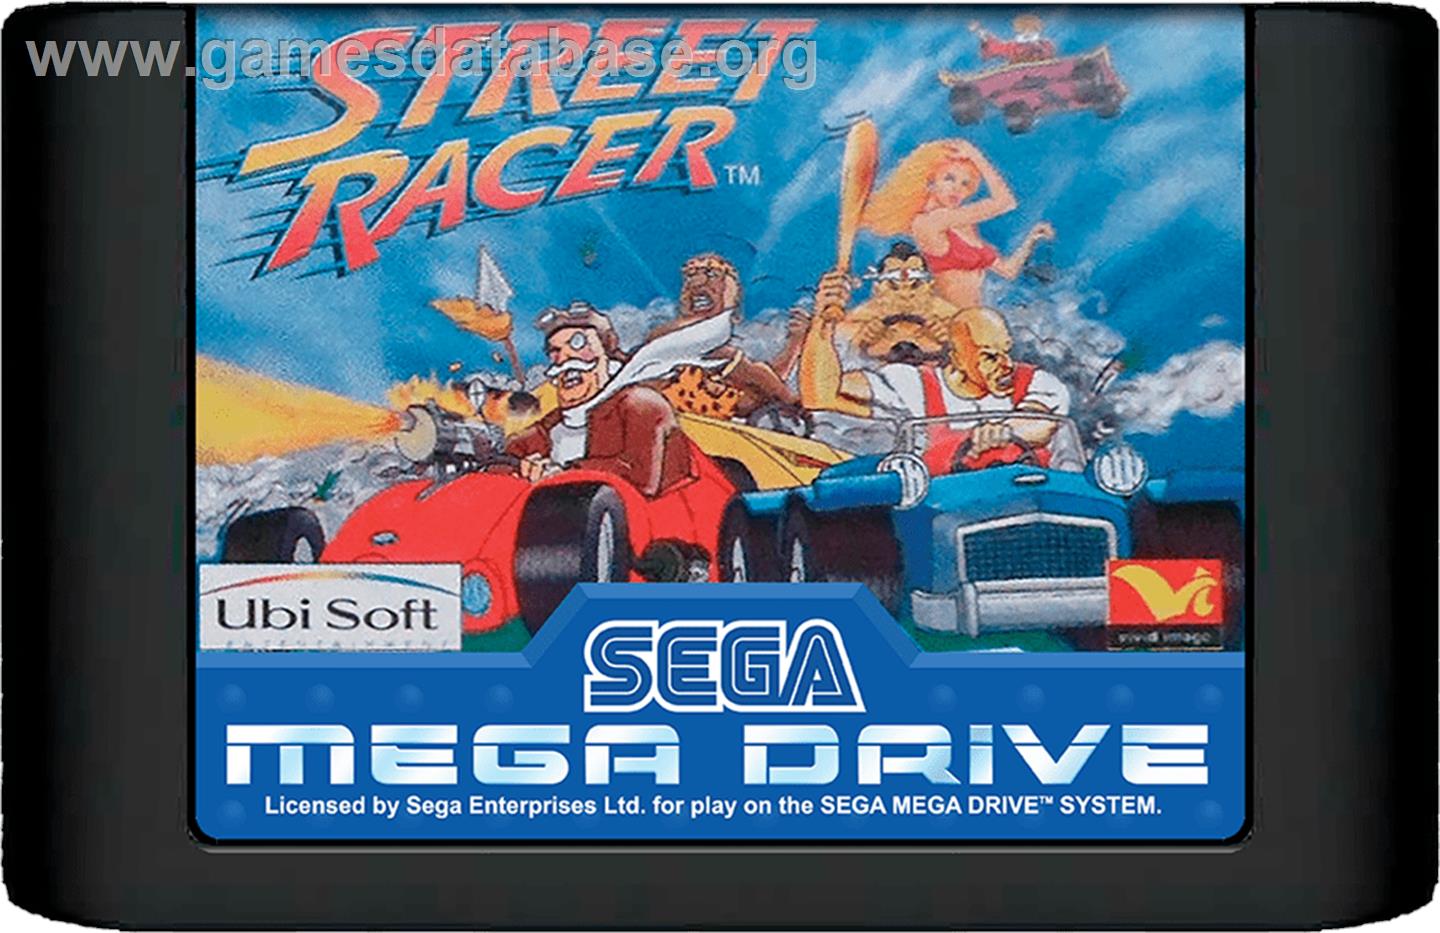 Street Racer - Sega Genesis - Artwork - Cartridge